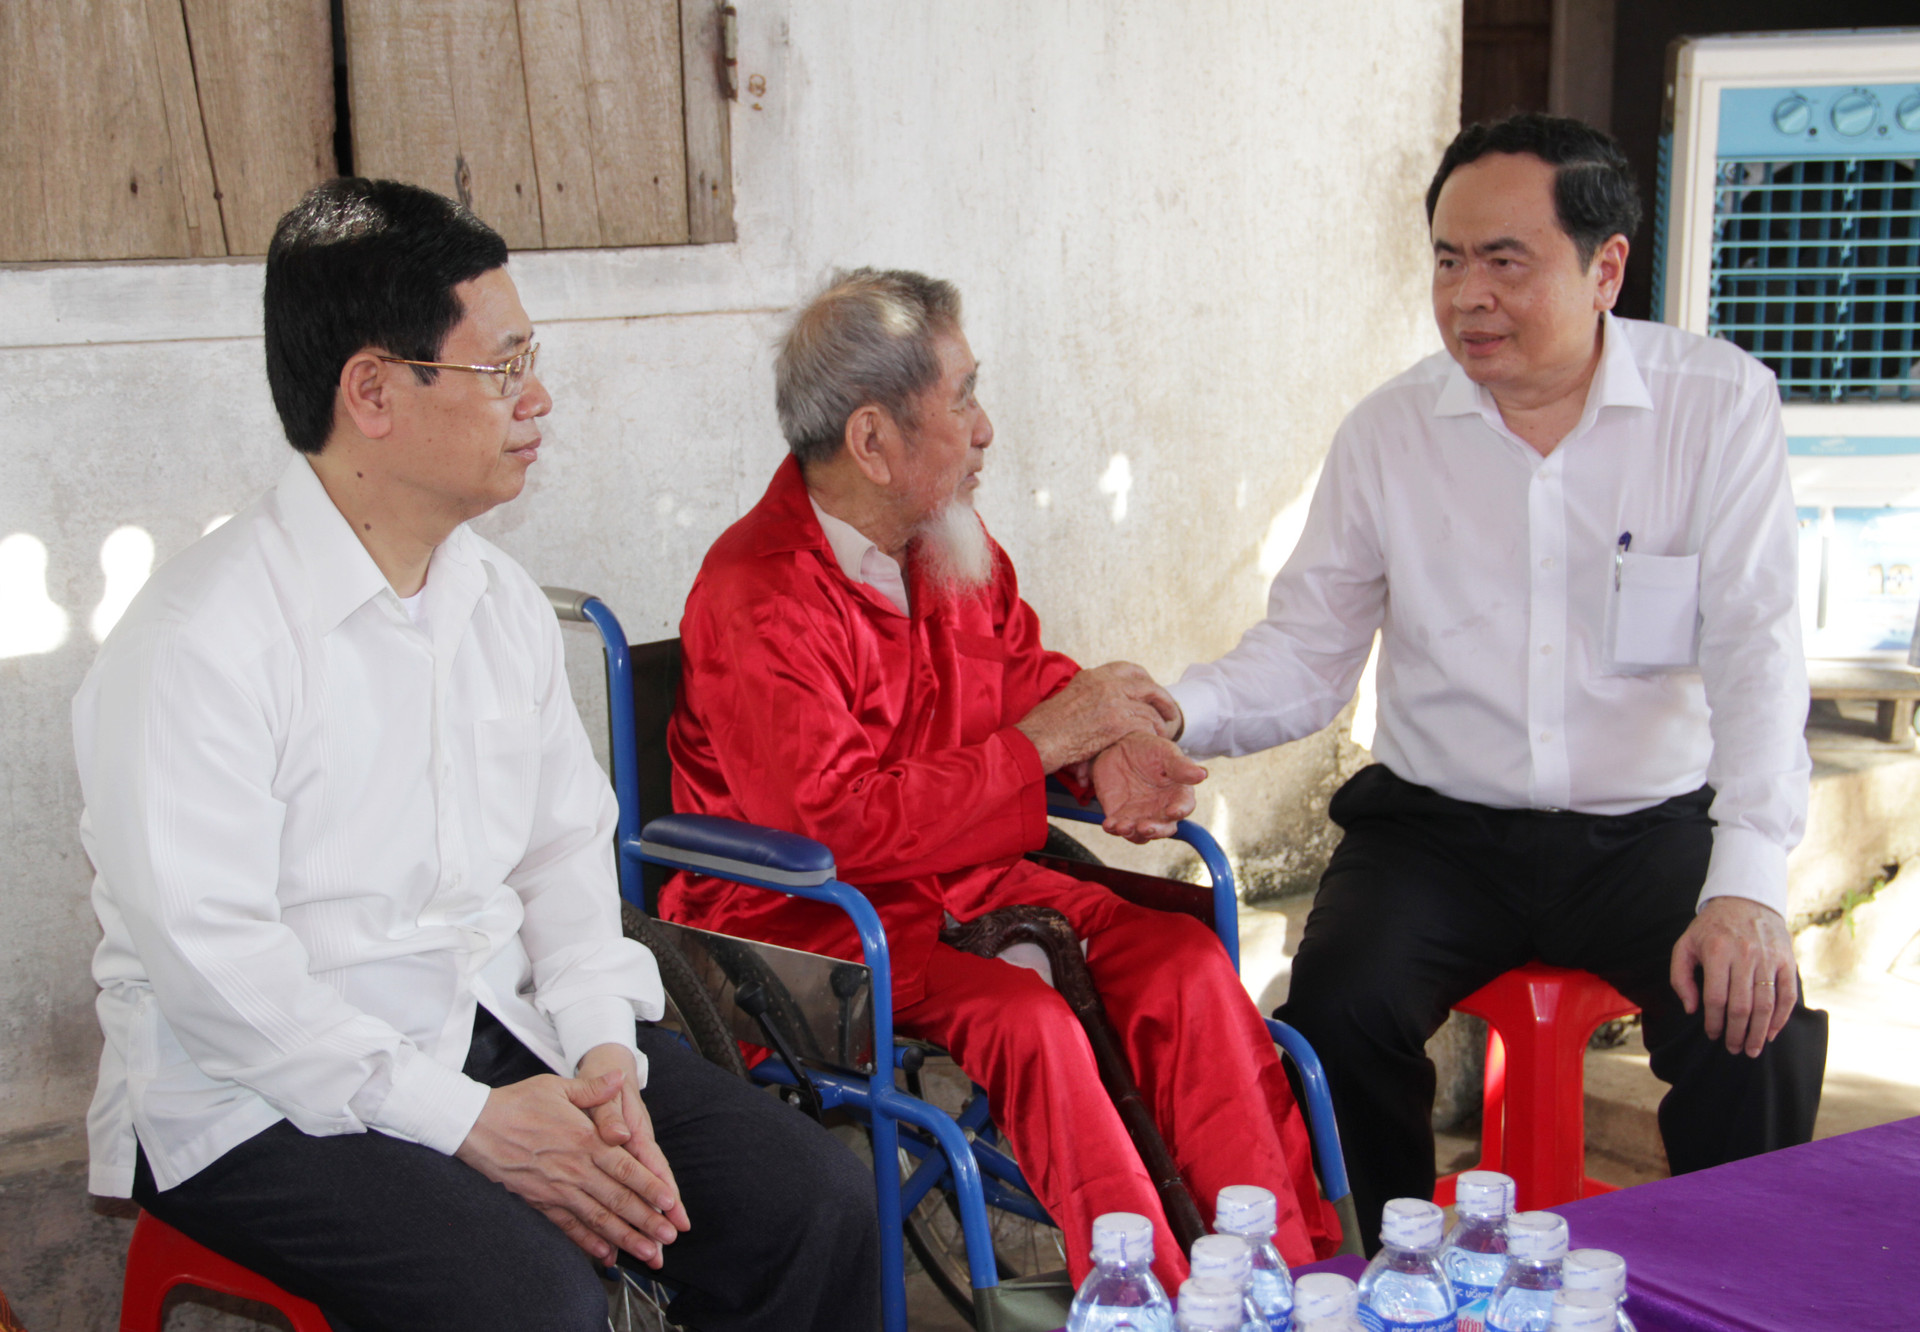 3.“Phải chăm lo cho gia đình chính sách bằng những hành động thiết thực nhất”, Chủ tịch Trần Thanh Mẫn yêu cầu các cấp ngành của tỉnh Nghệ An khi thực hiện công tác chính sách người có công trên địa bàn.